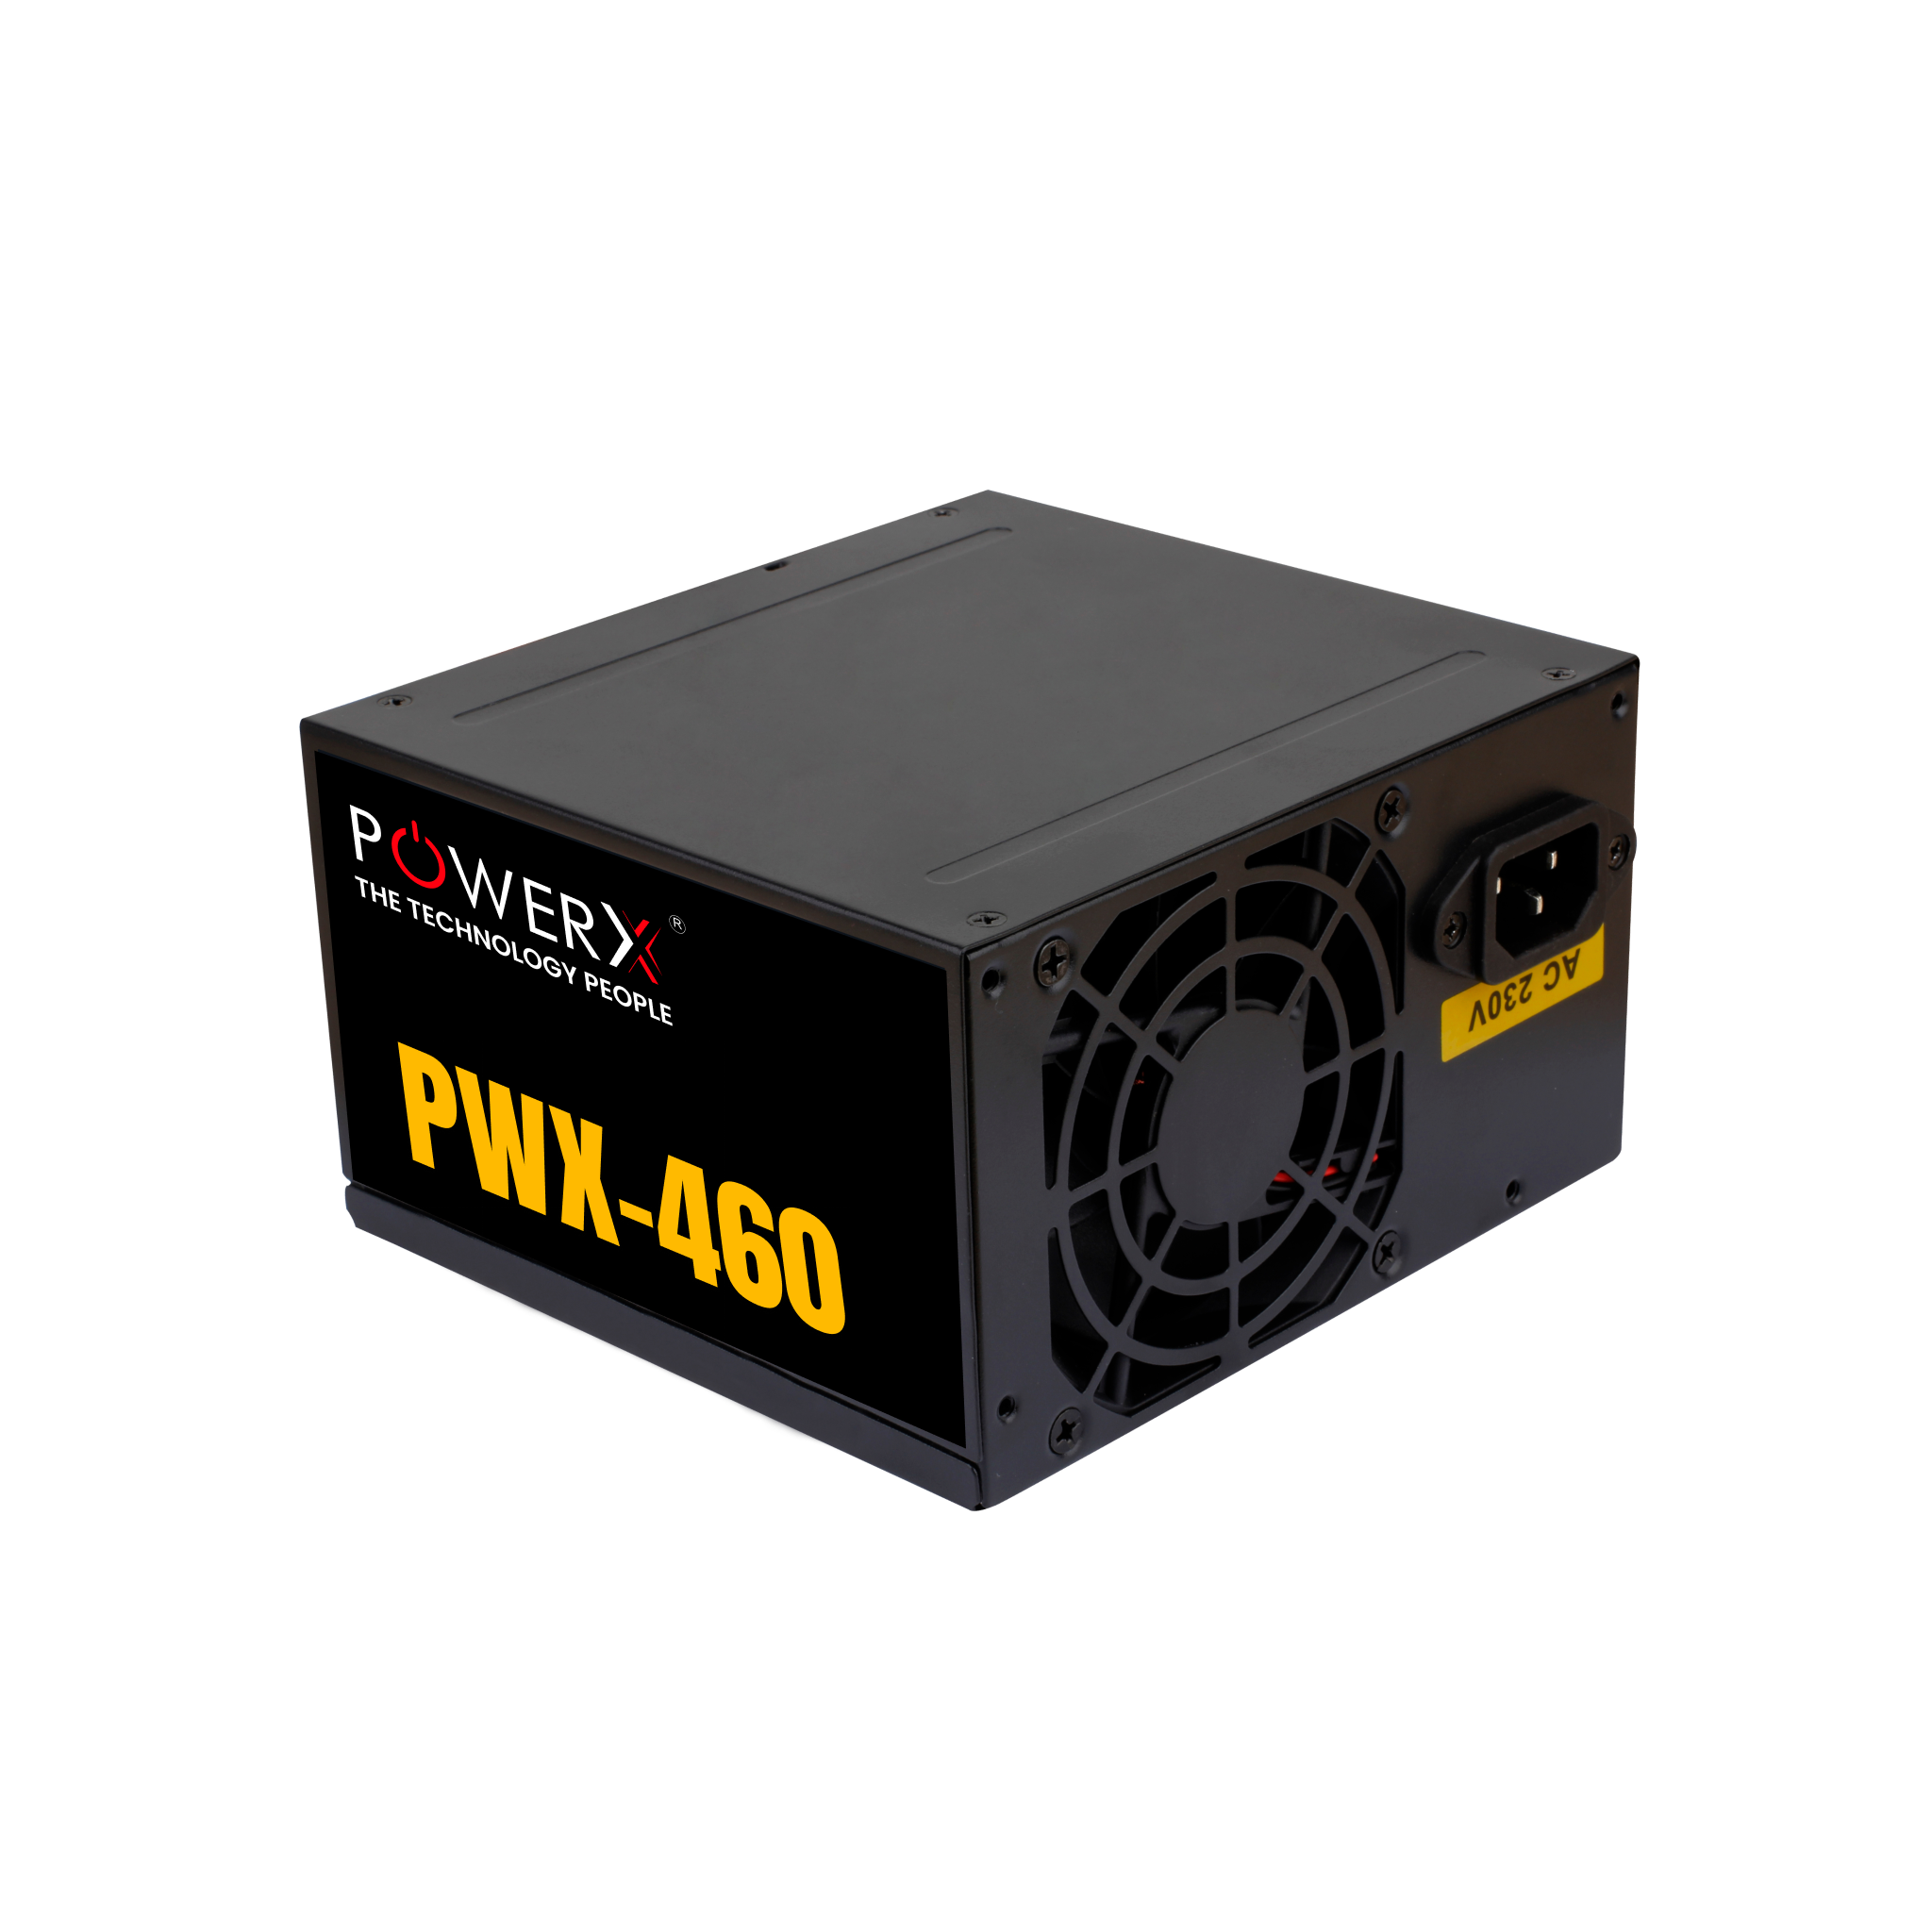 PWX-460